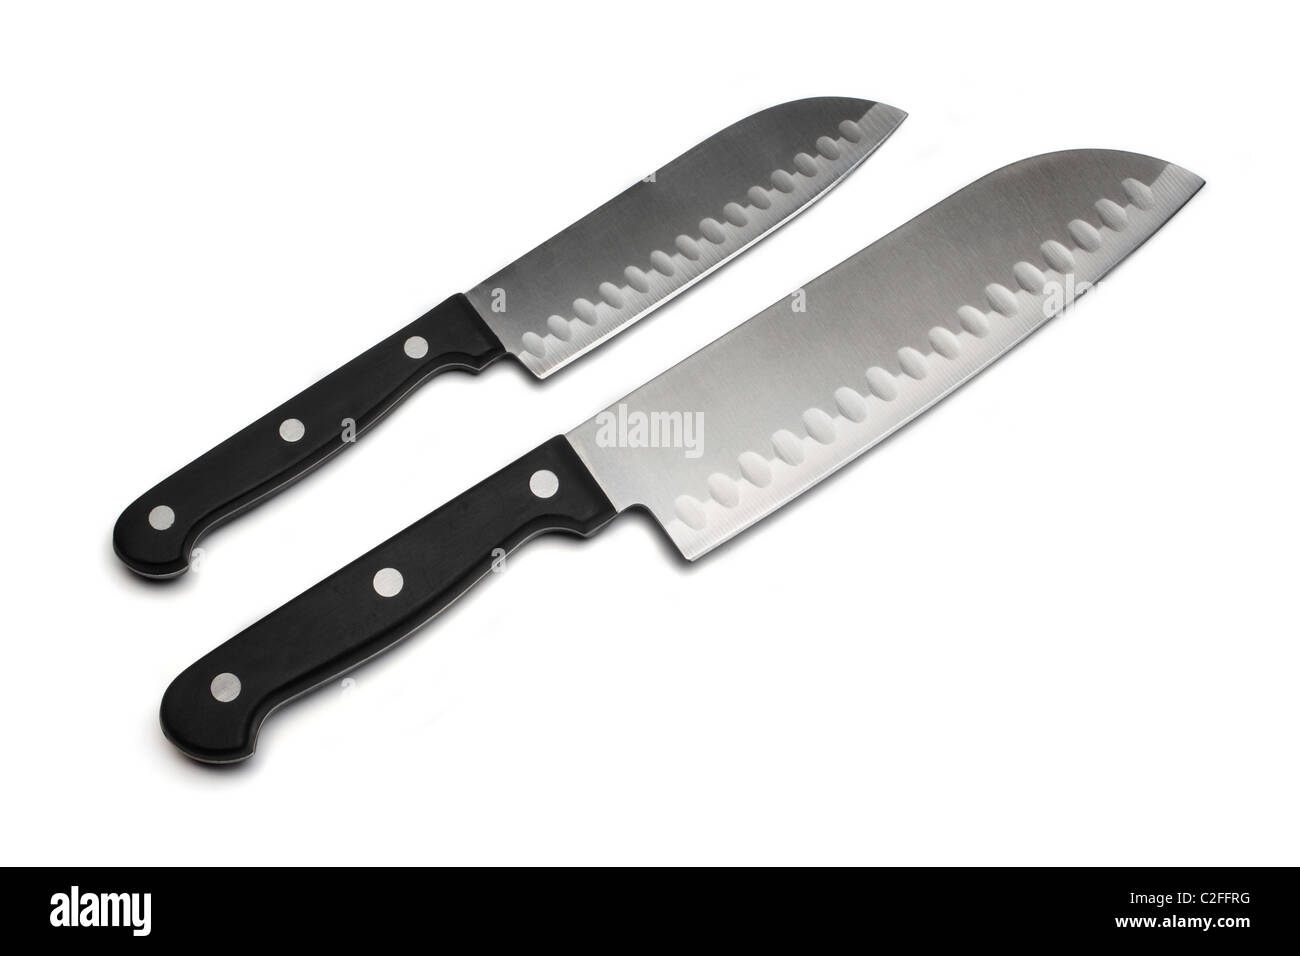 two kitchen knifes Stock Photo